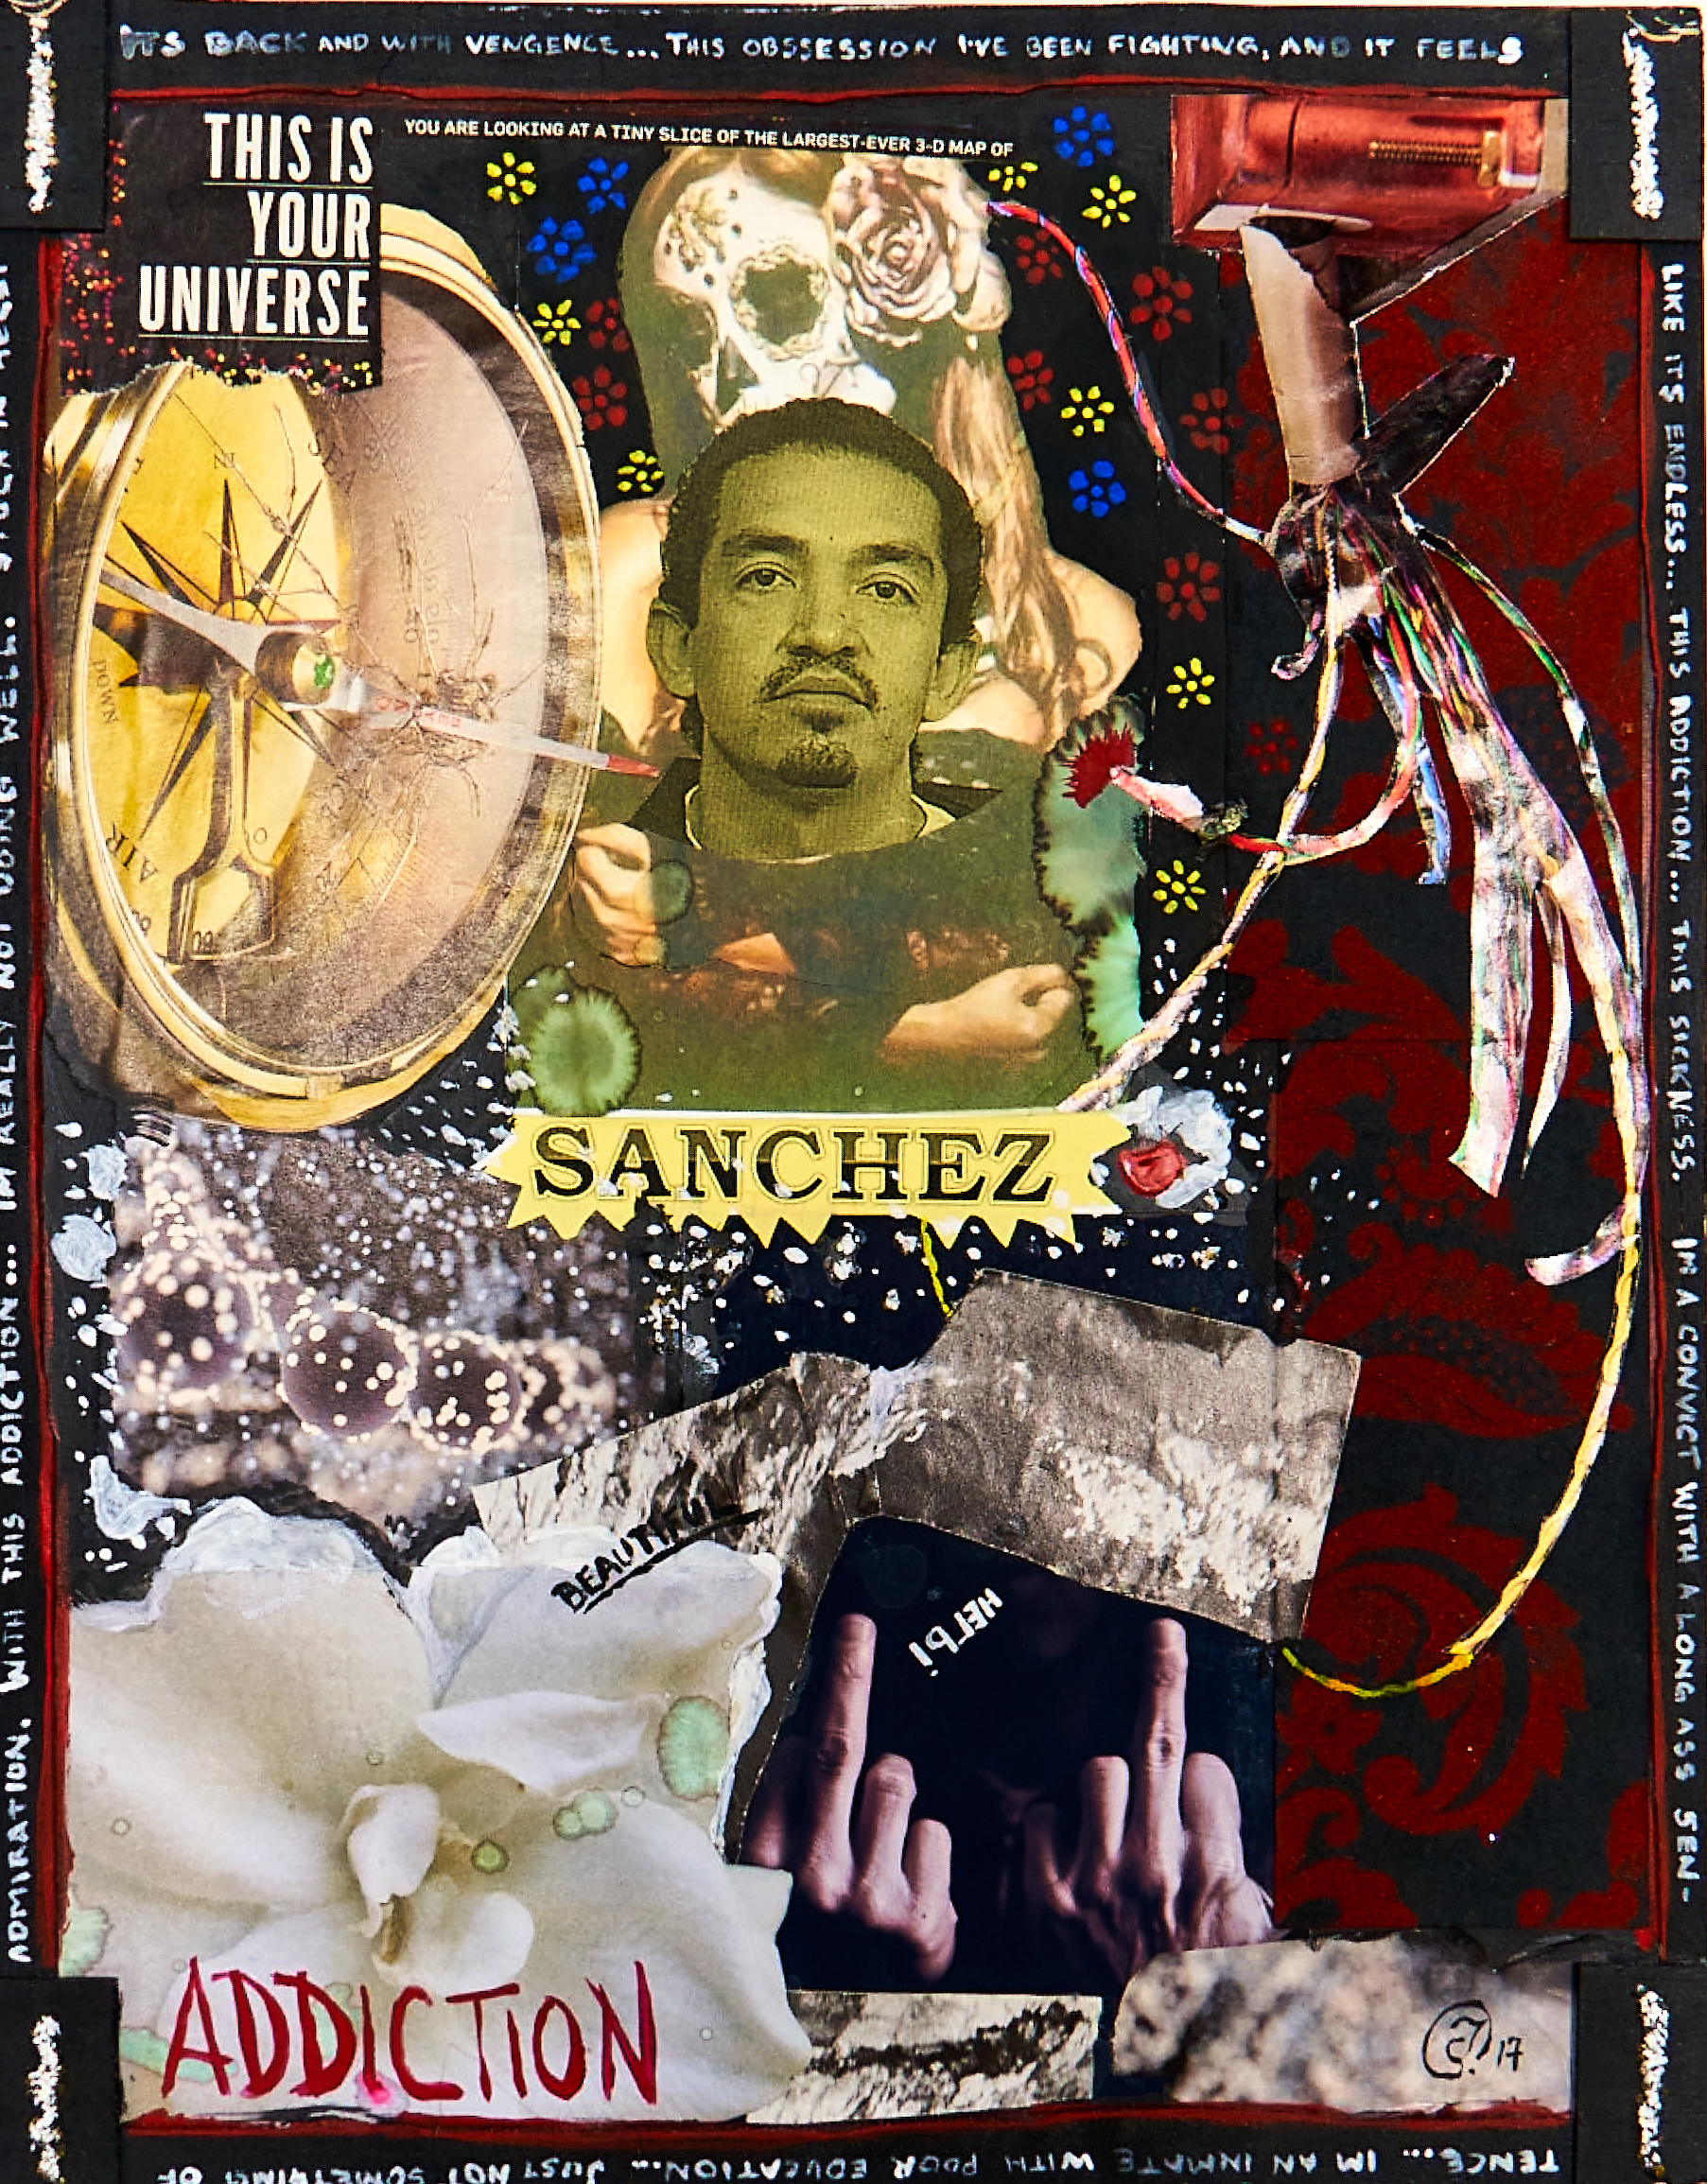 Collage by John Sanchez